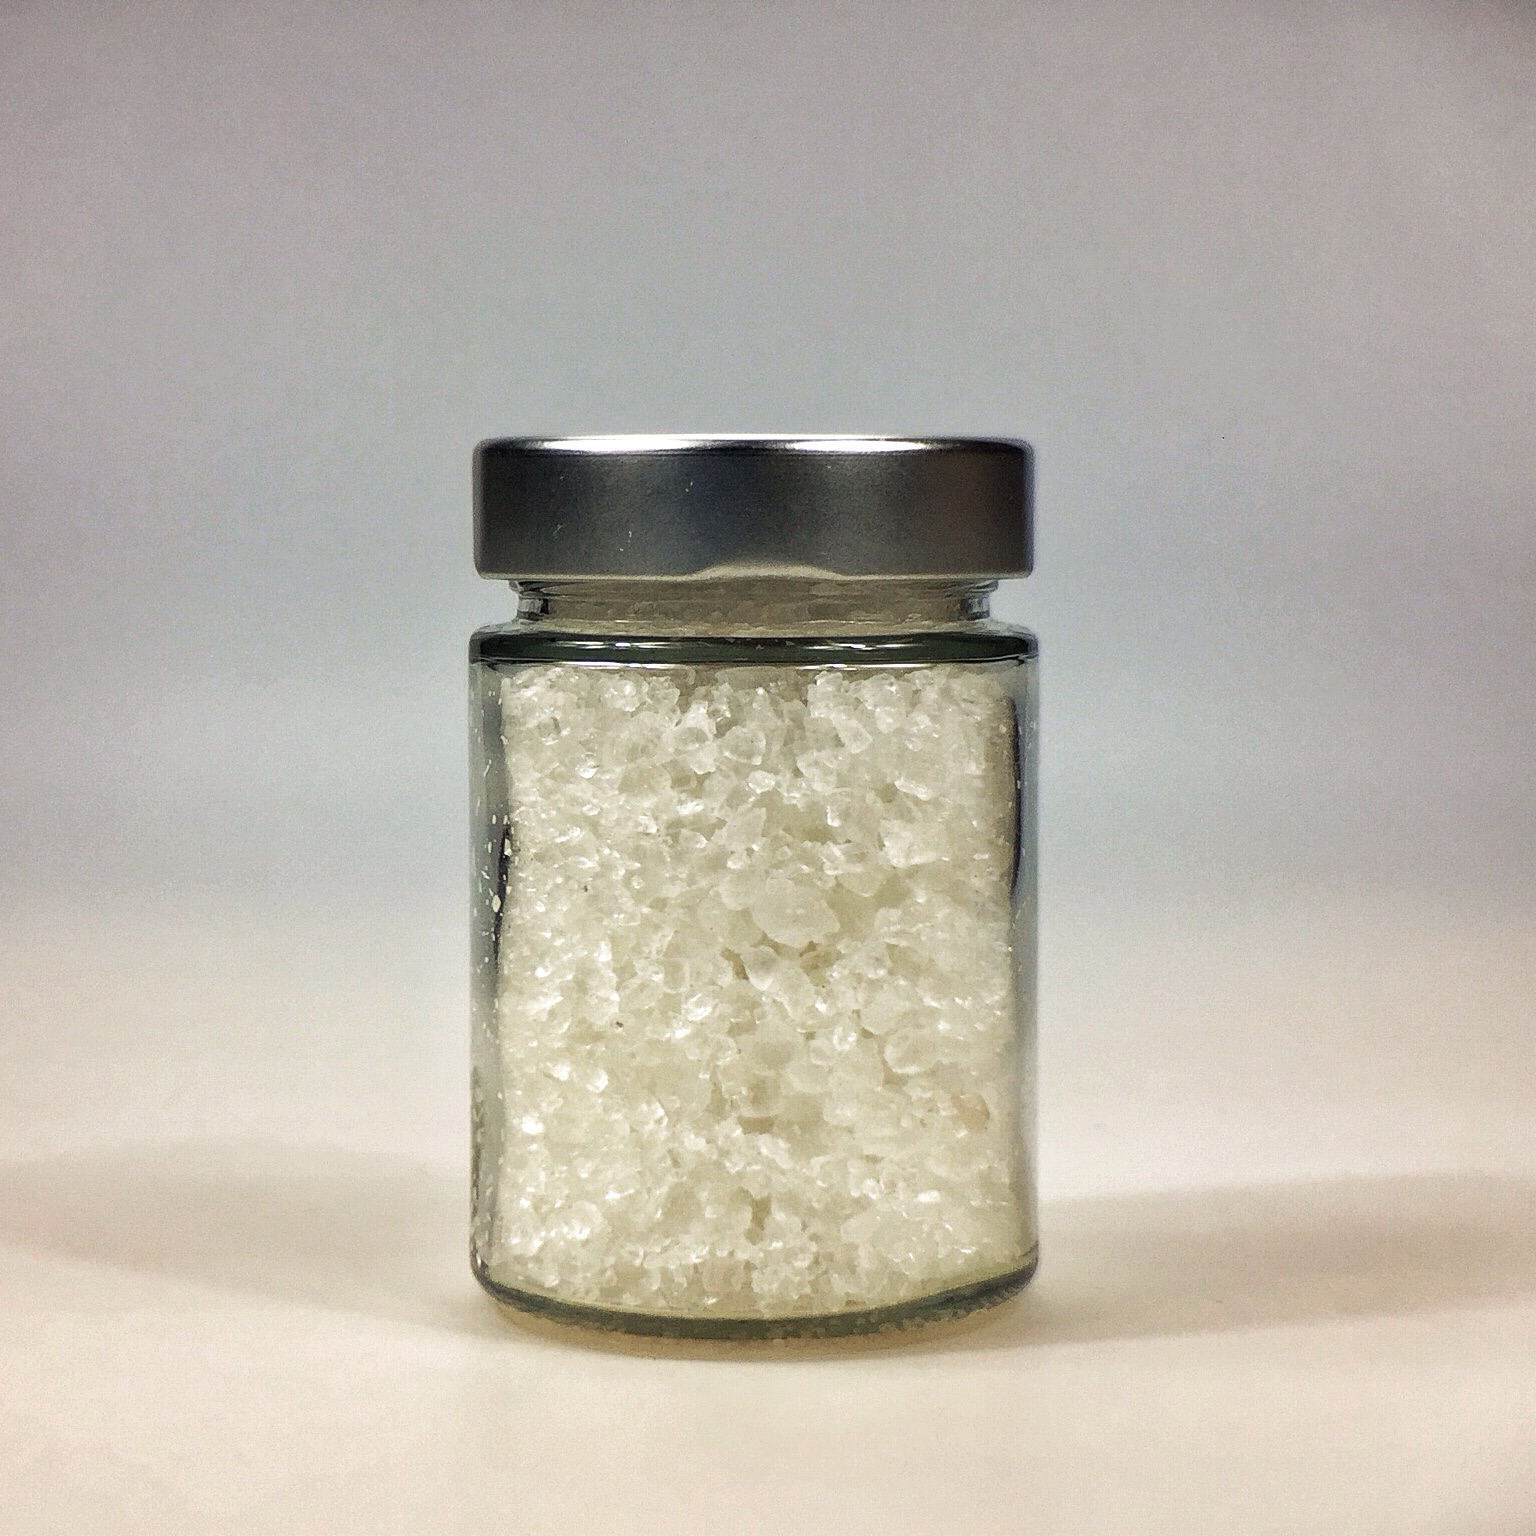 Halit Salz grob gemahlen für Salzmühle im kleinen Glas mit Silberdeckel